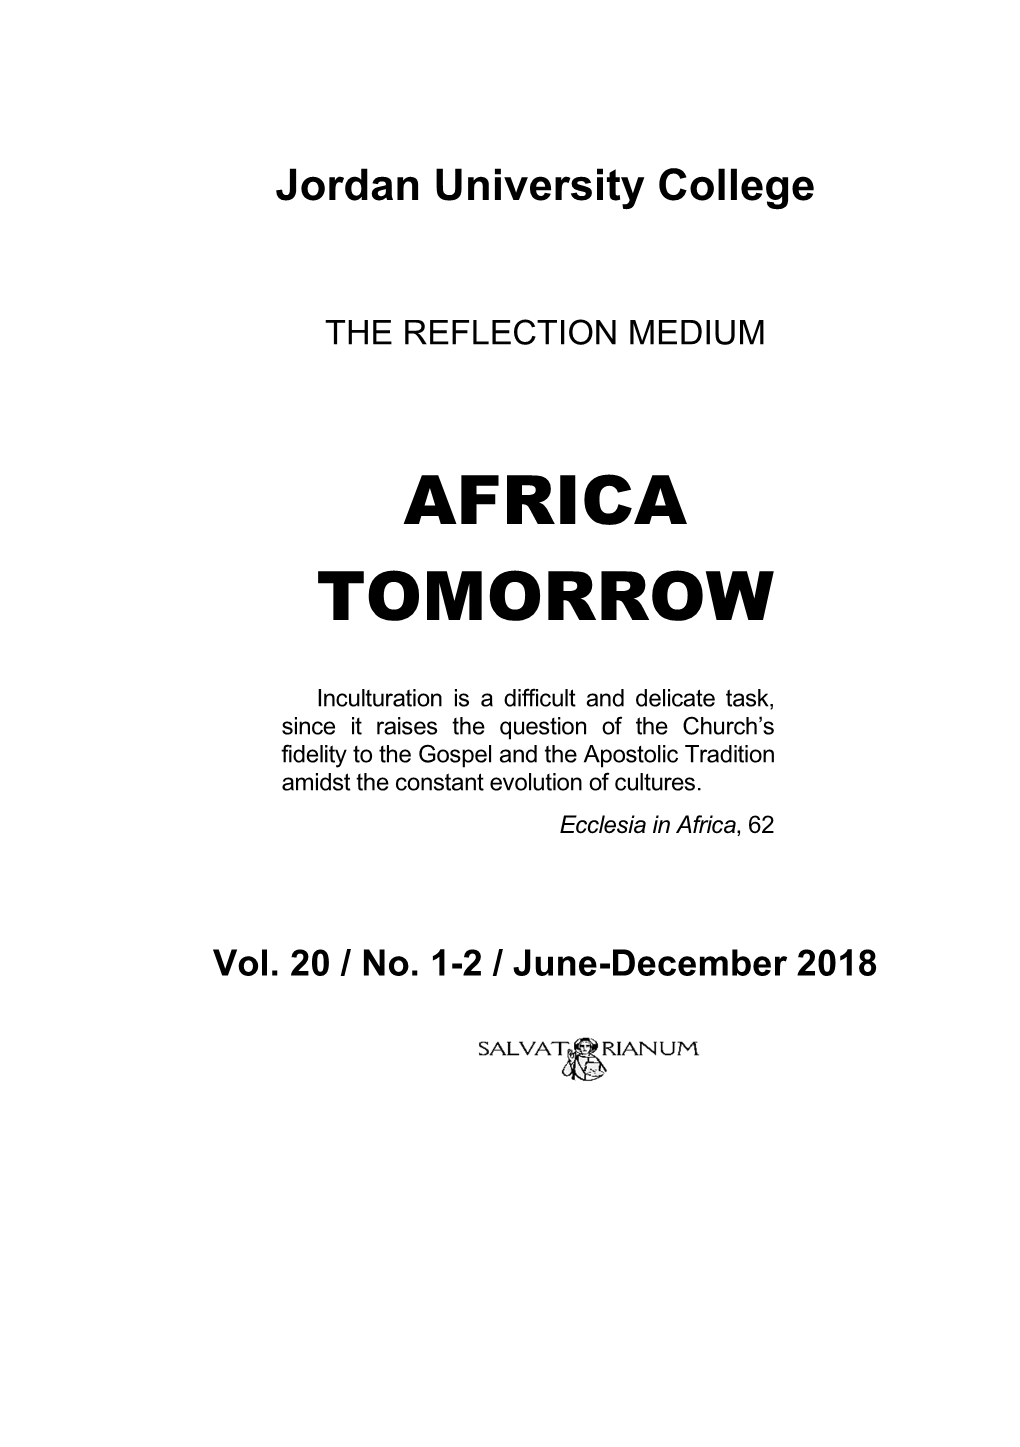 Africa Tomorrow 2018 Vol. 20